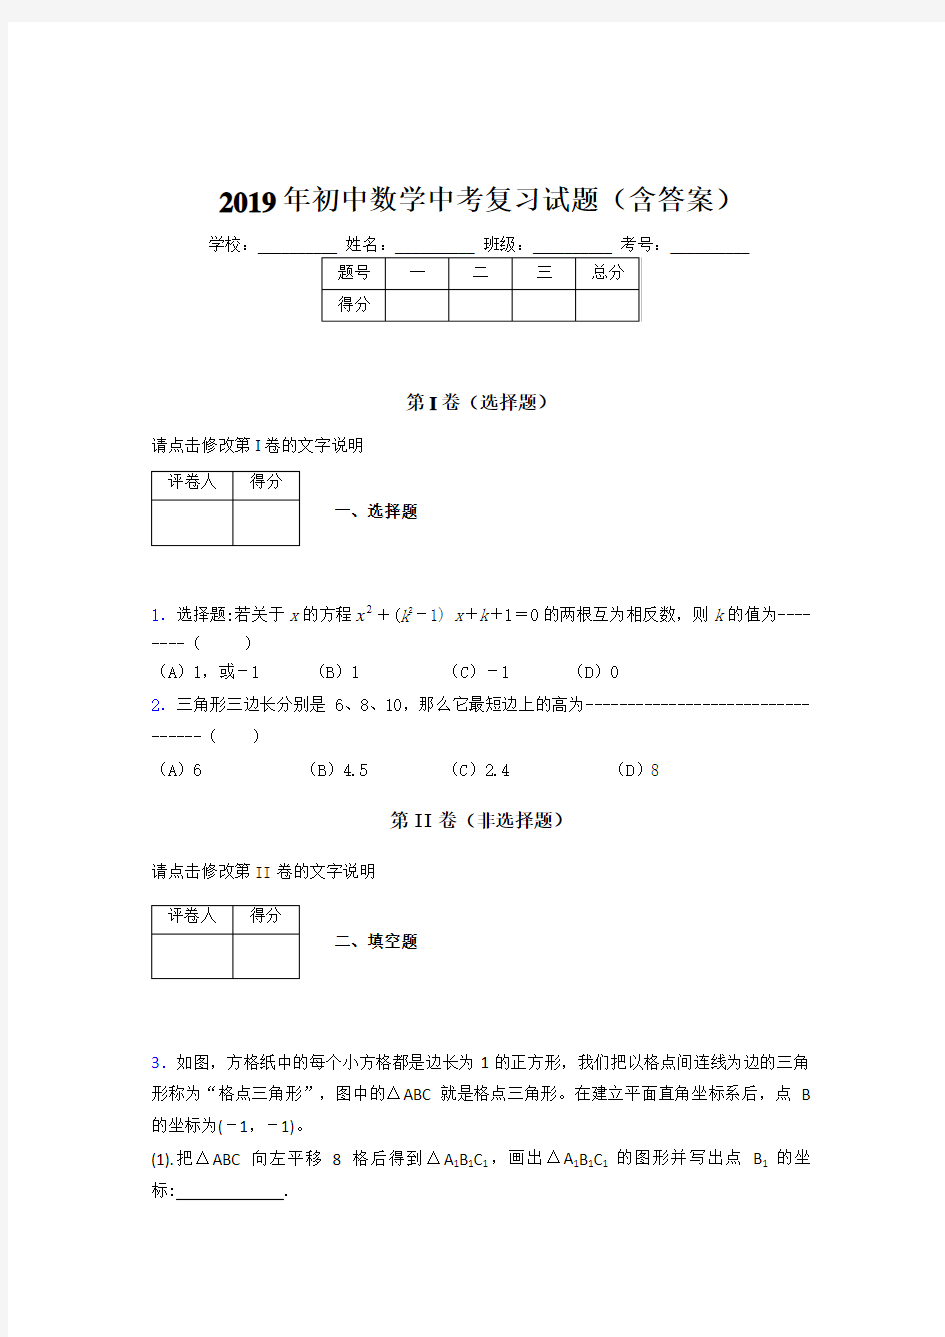 精选初三数学期末考试题库(含标准答案)